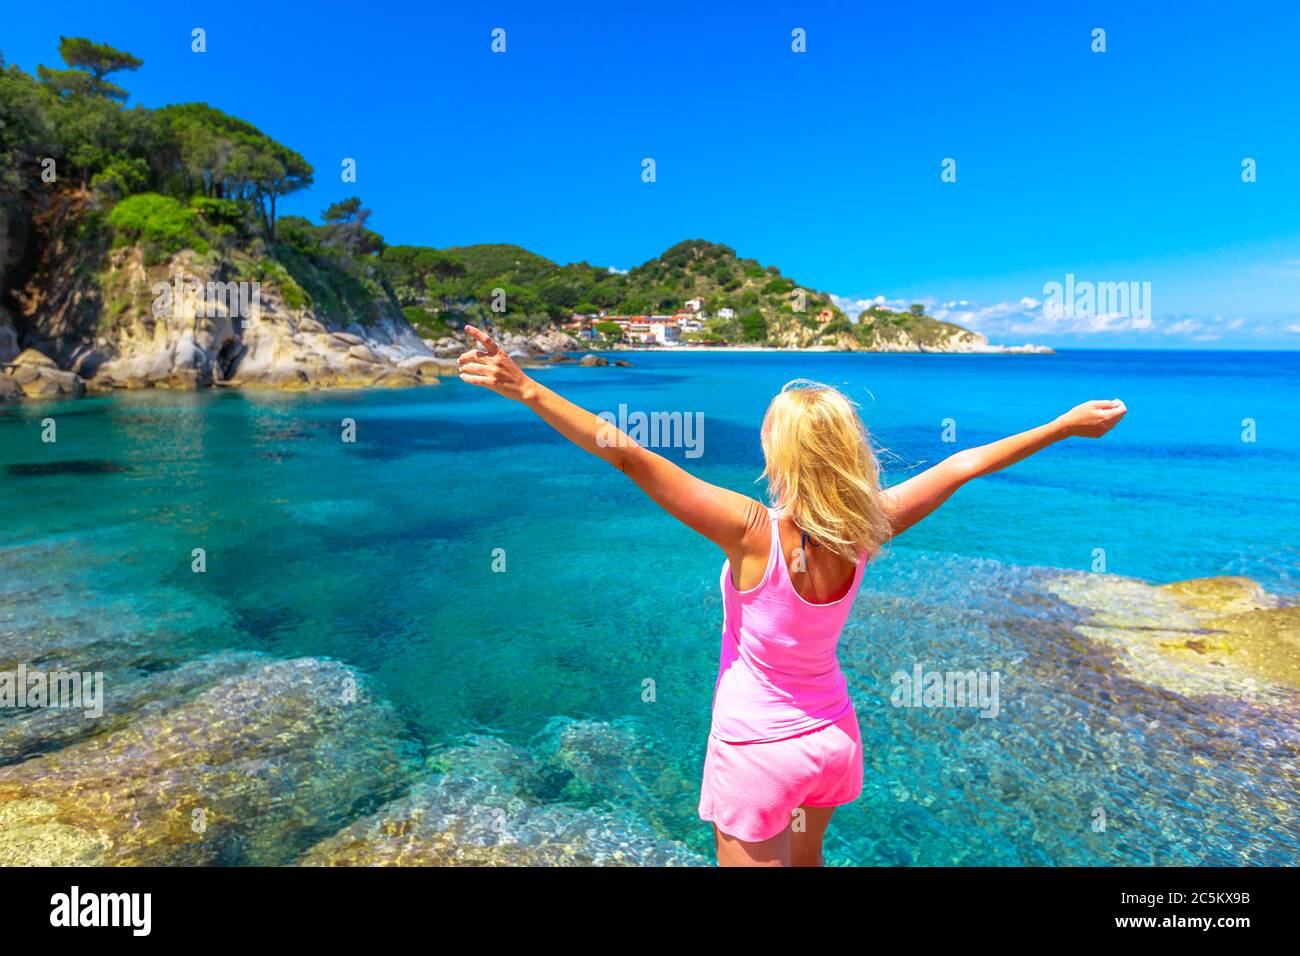 Bonne femme aux bras ouverts en robe rose appréciant à Cotoncello Beach près de la populaire plage Sant 'Andrea, île d'Elbe. Blonde touriste en vacances en Italie Banque D'Images